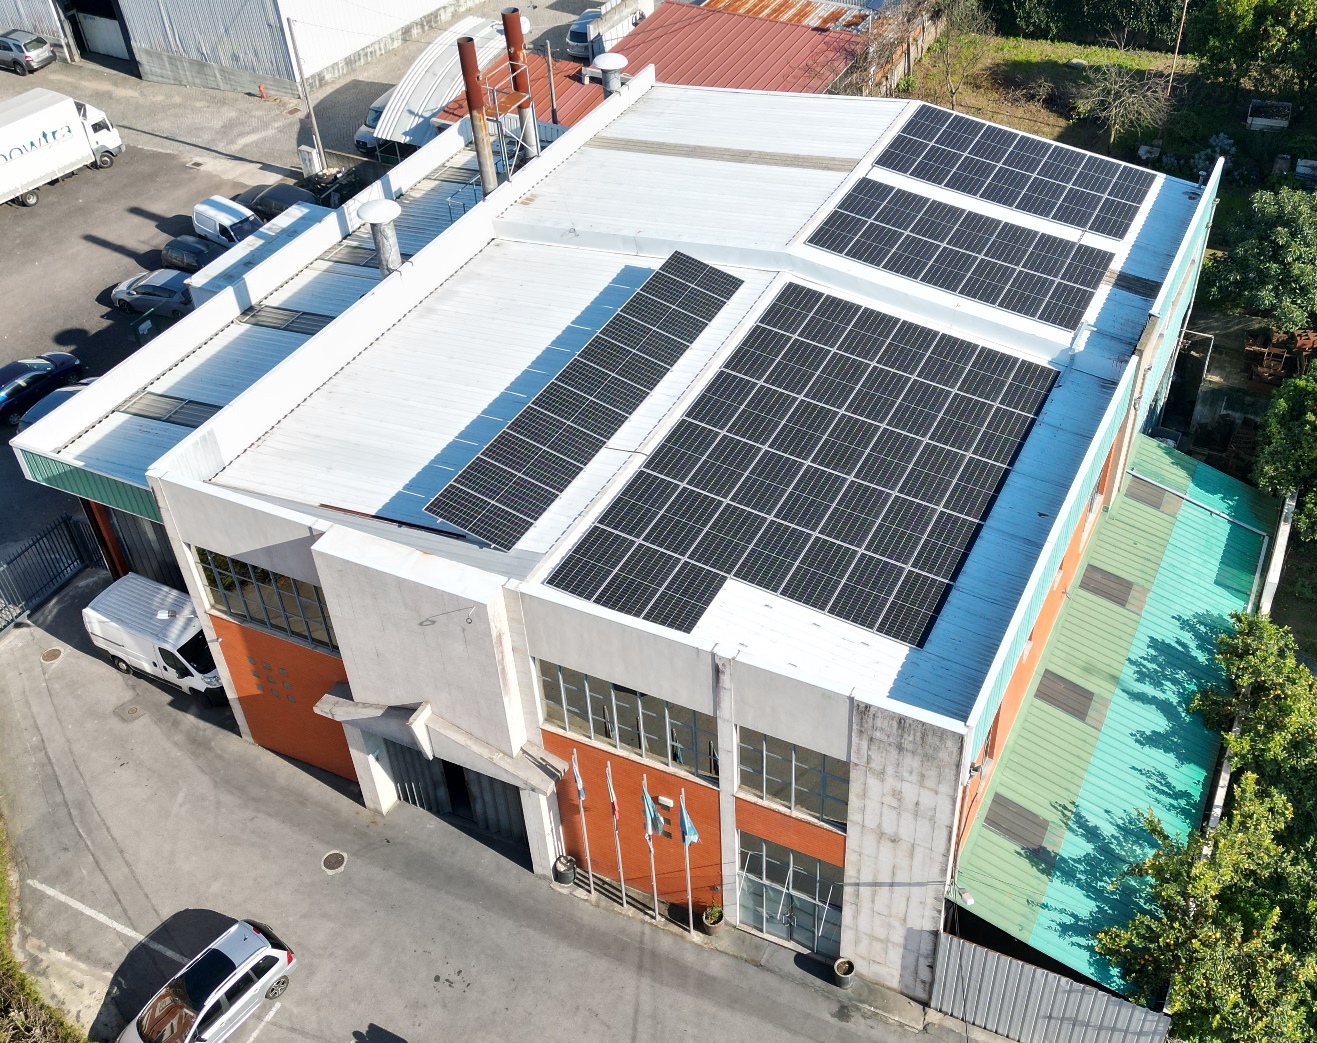 Instalação de 77 painéis fotovoltaicos na Fundição Ricarsil, Braga, por A Mais Casa